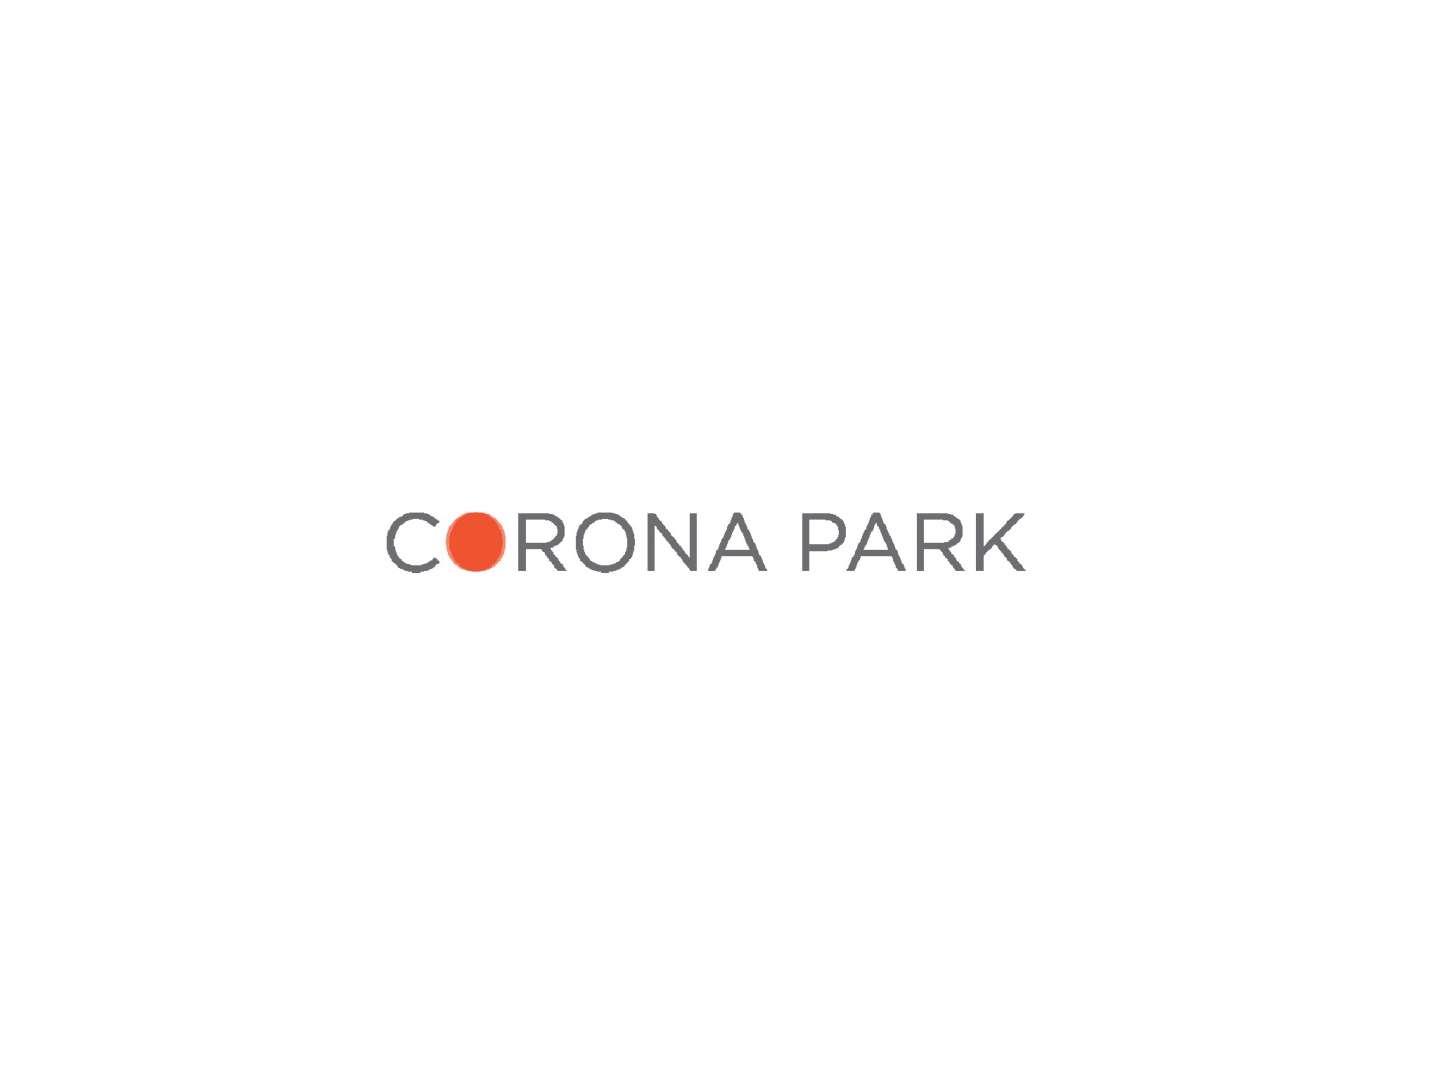 Corona park